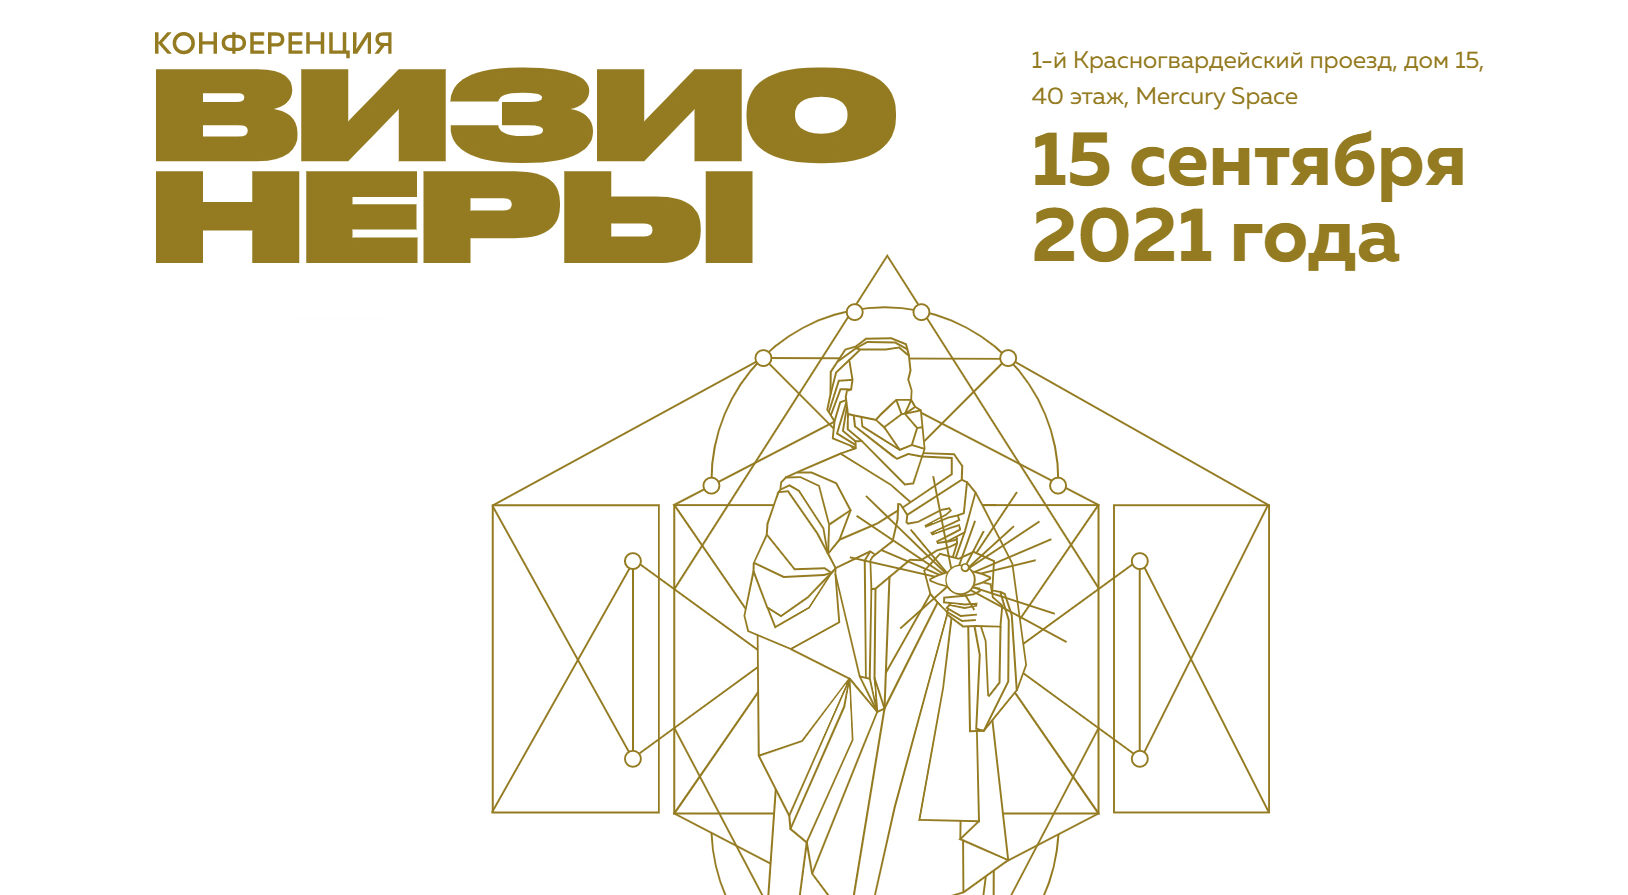 Рашид Исмаилов будет модерировать дискуссию «Жизненный цикл продукта» на конференции «Визионеры» в Москве